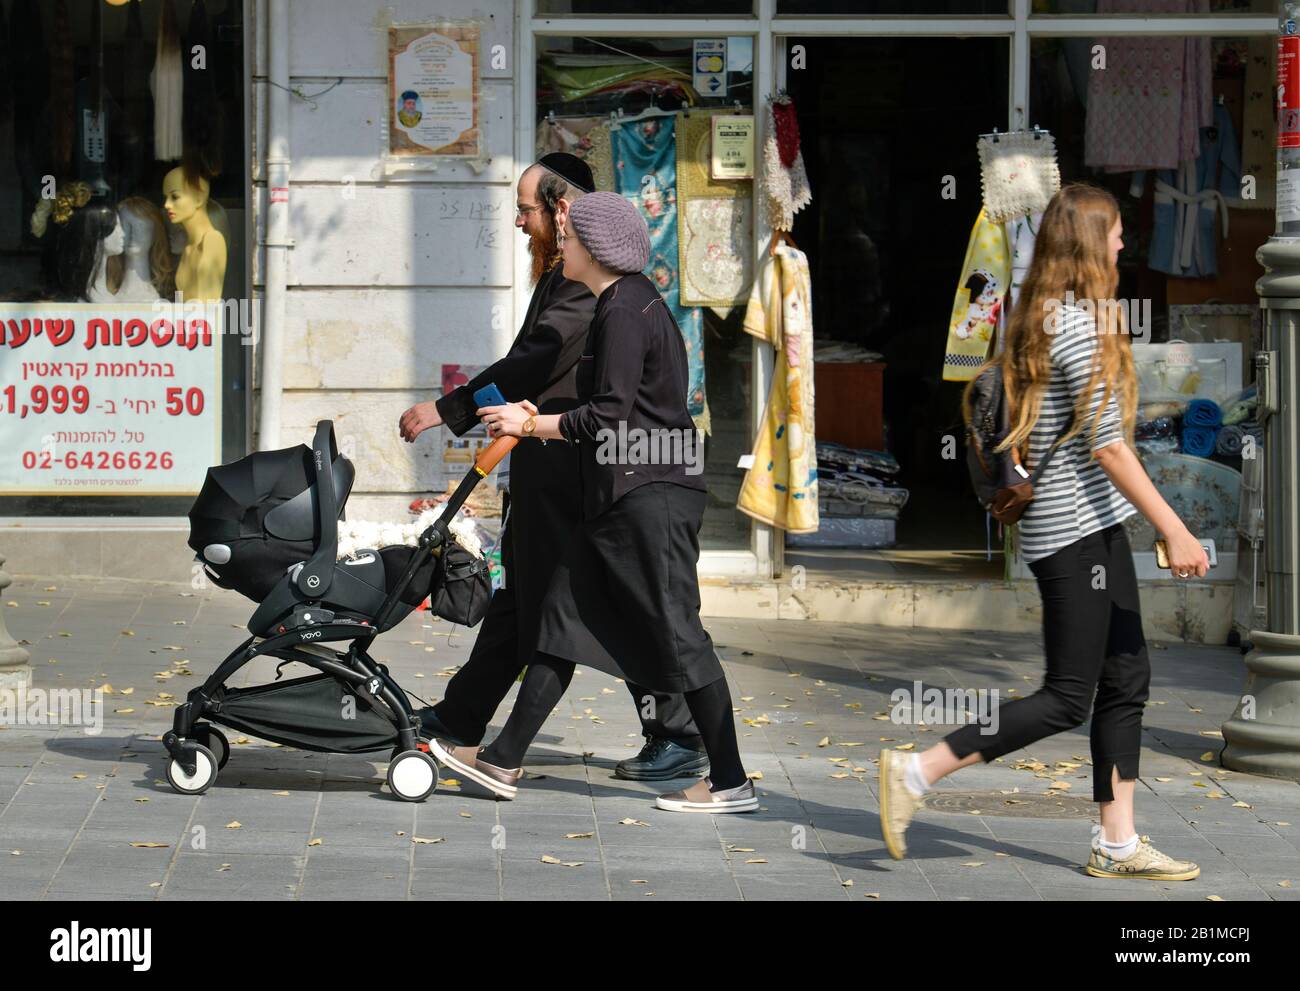 Straßenszene, moderne junge Menschen, orthodoxe Juden, Jaffa Street, Jerusalem, Israel Stock Photo